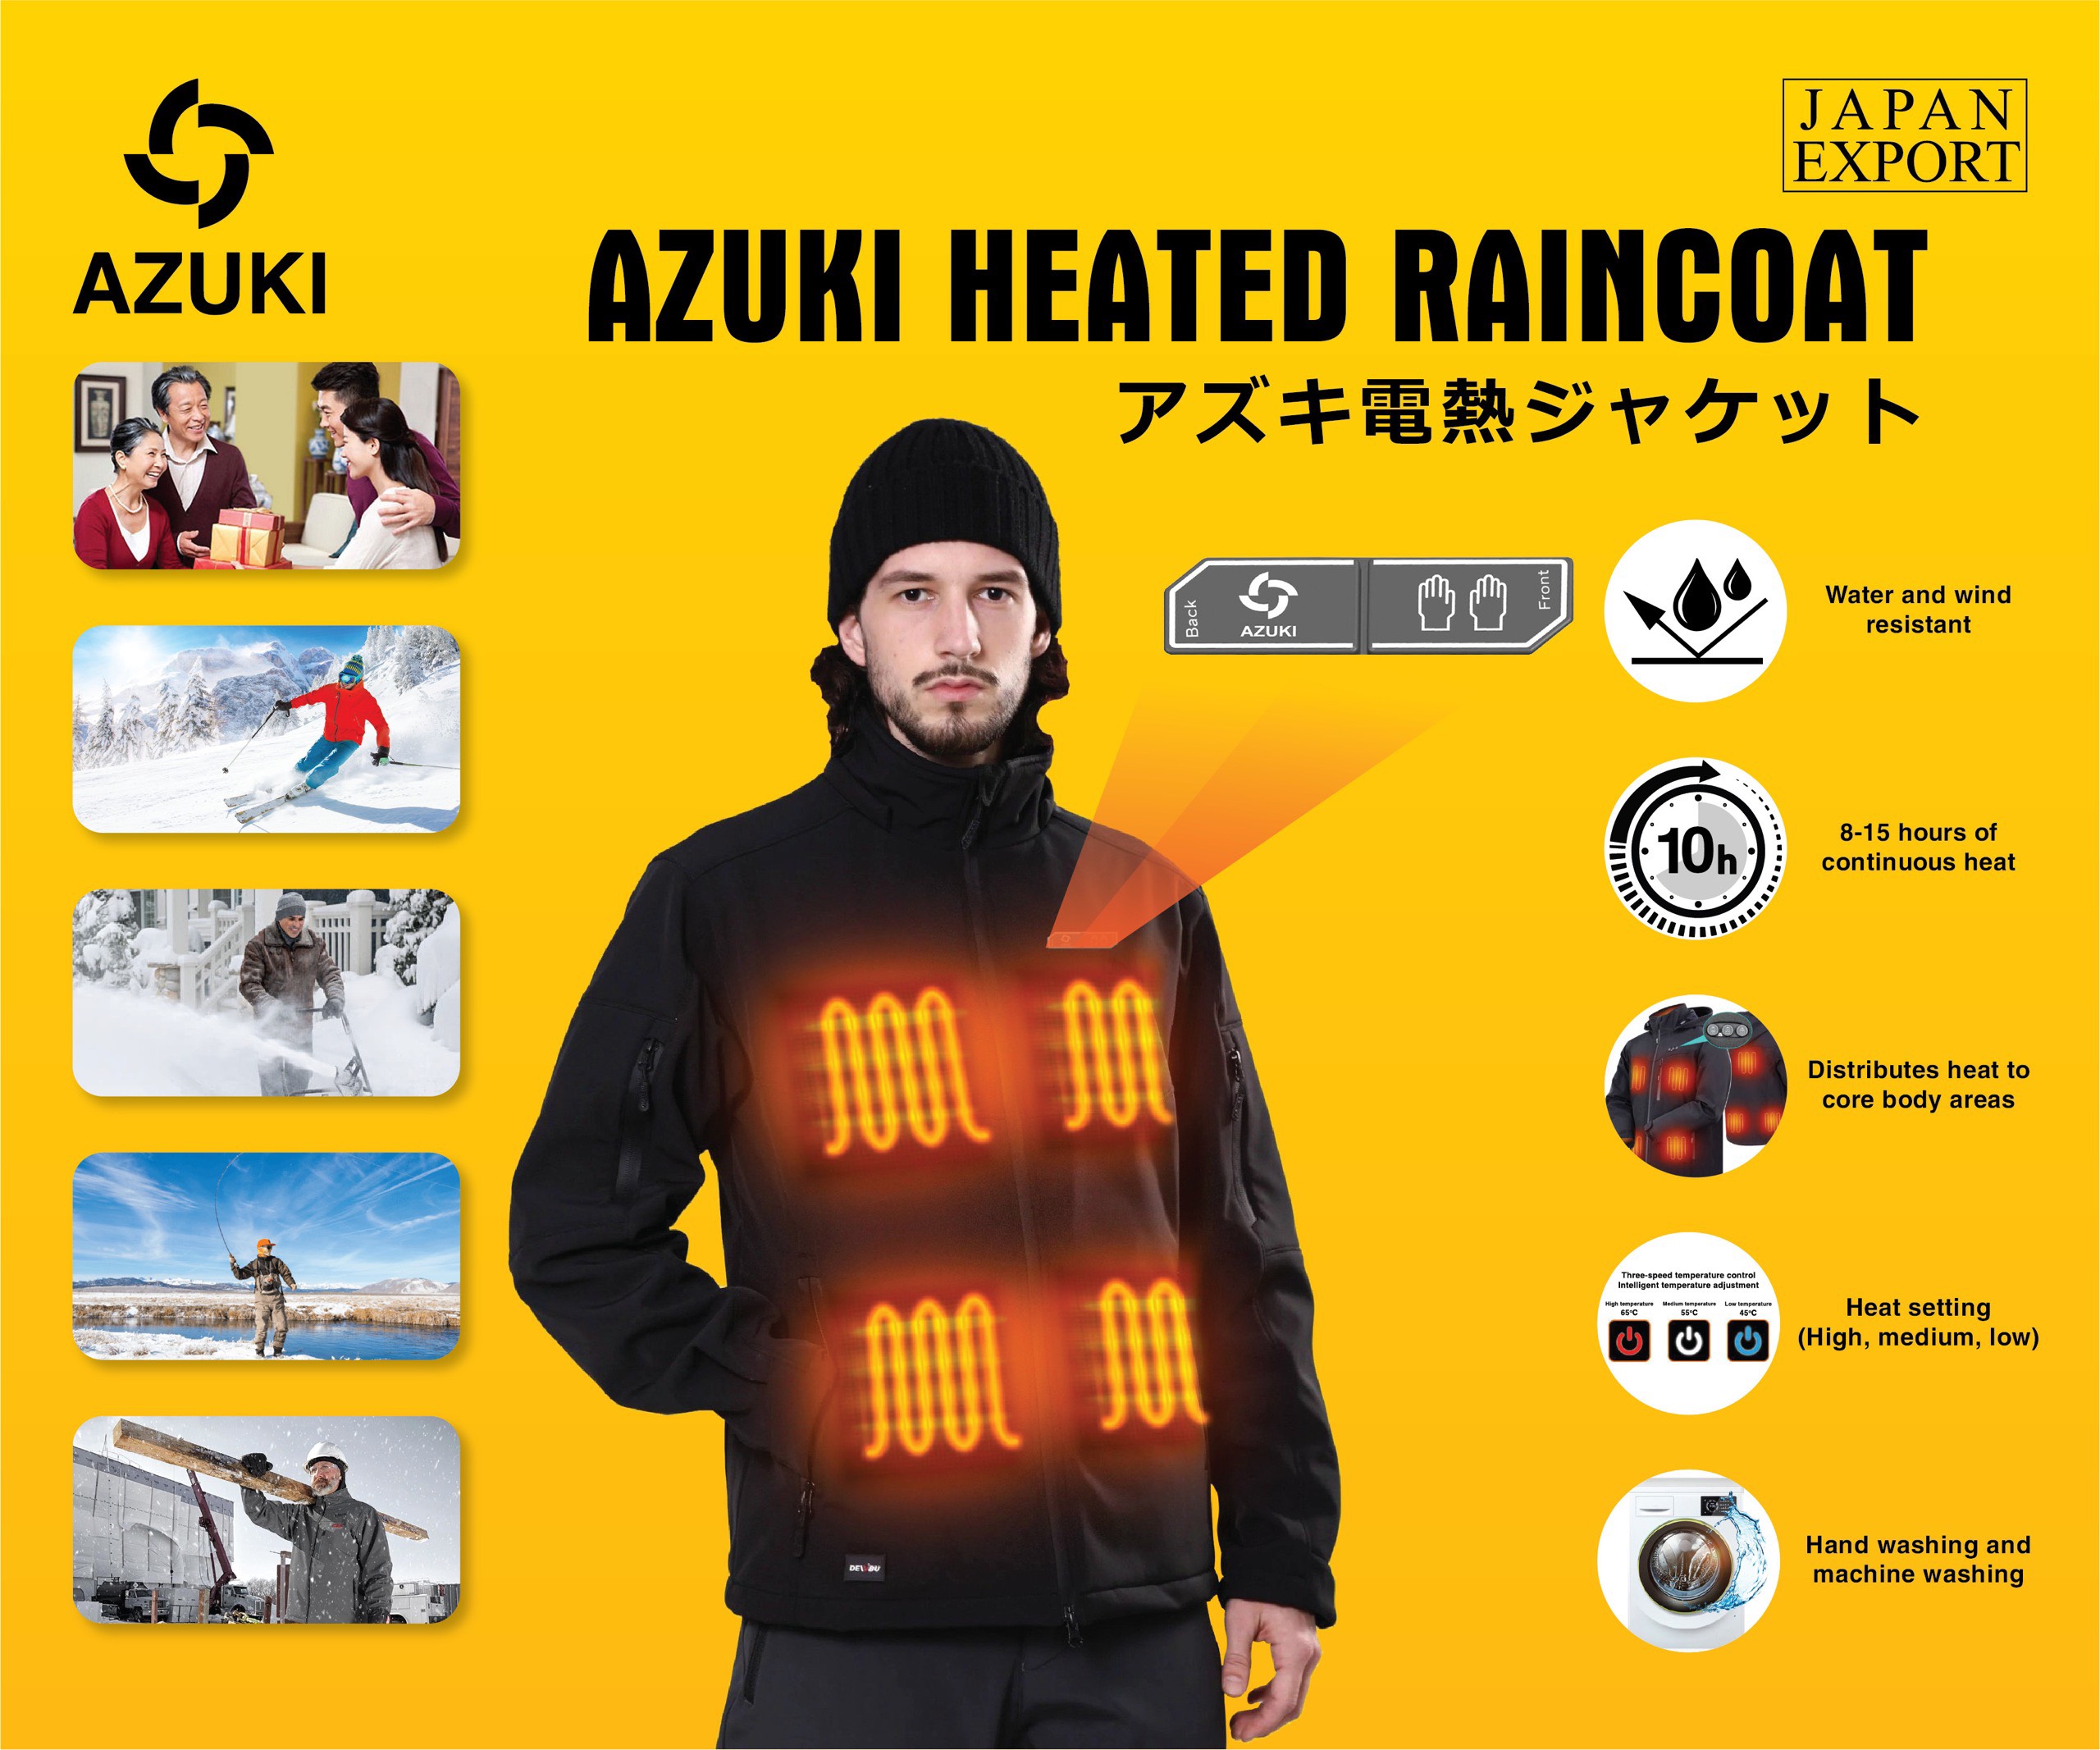 Một chiếc áo sưởi ấm Azuki Raincoat sẽ là phẩm chất hoàn hảo cho những ngày thời tiết se lạnh. Với chất liệu chống thấm nước và chống gió, bạn sẽ cảm thấy ấm áp và thoải mái khi đi bất kỳ đâu và bất kỳ thời tiết nào. Khám phá ngay để có sự lựa chọn đúng đắn cho mùa đông năm nay!